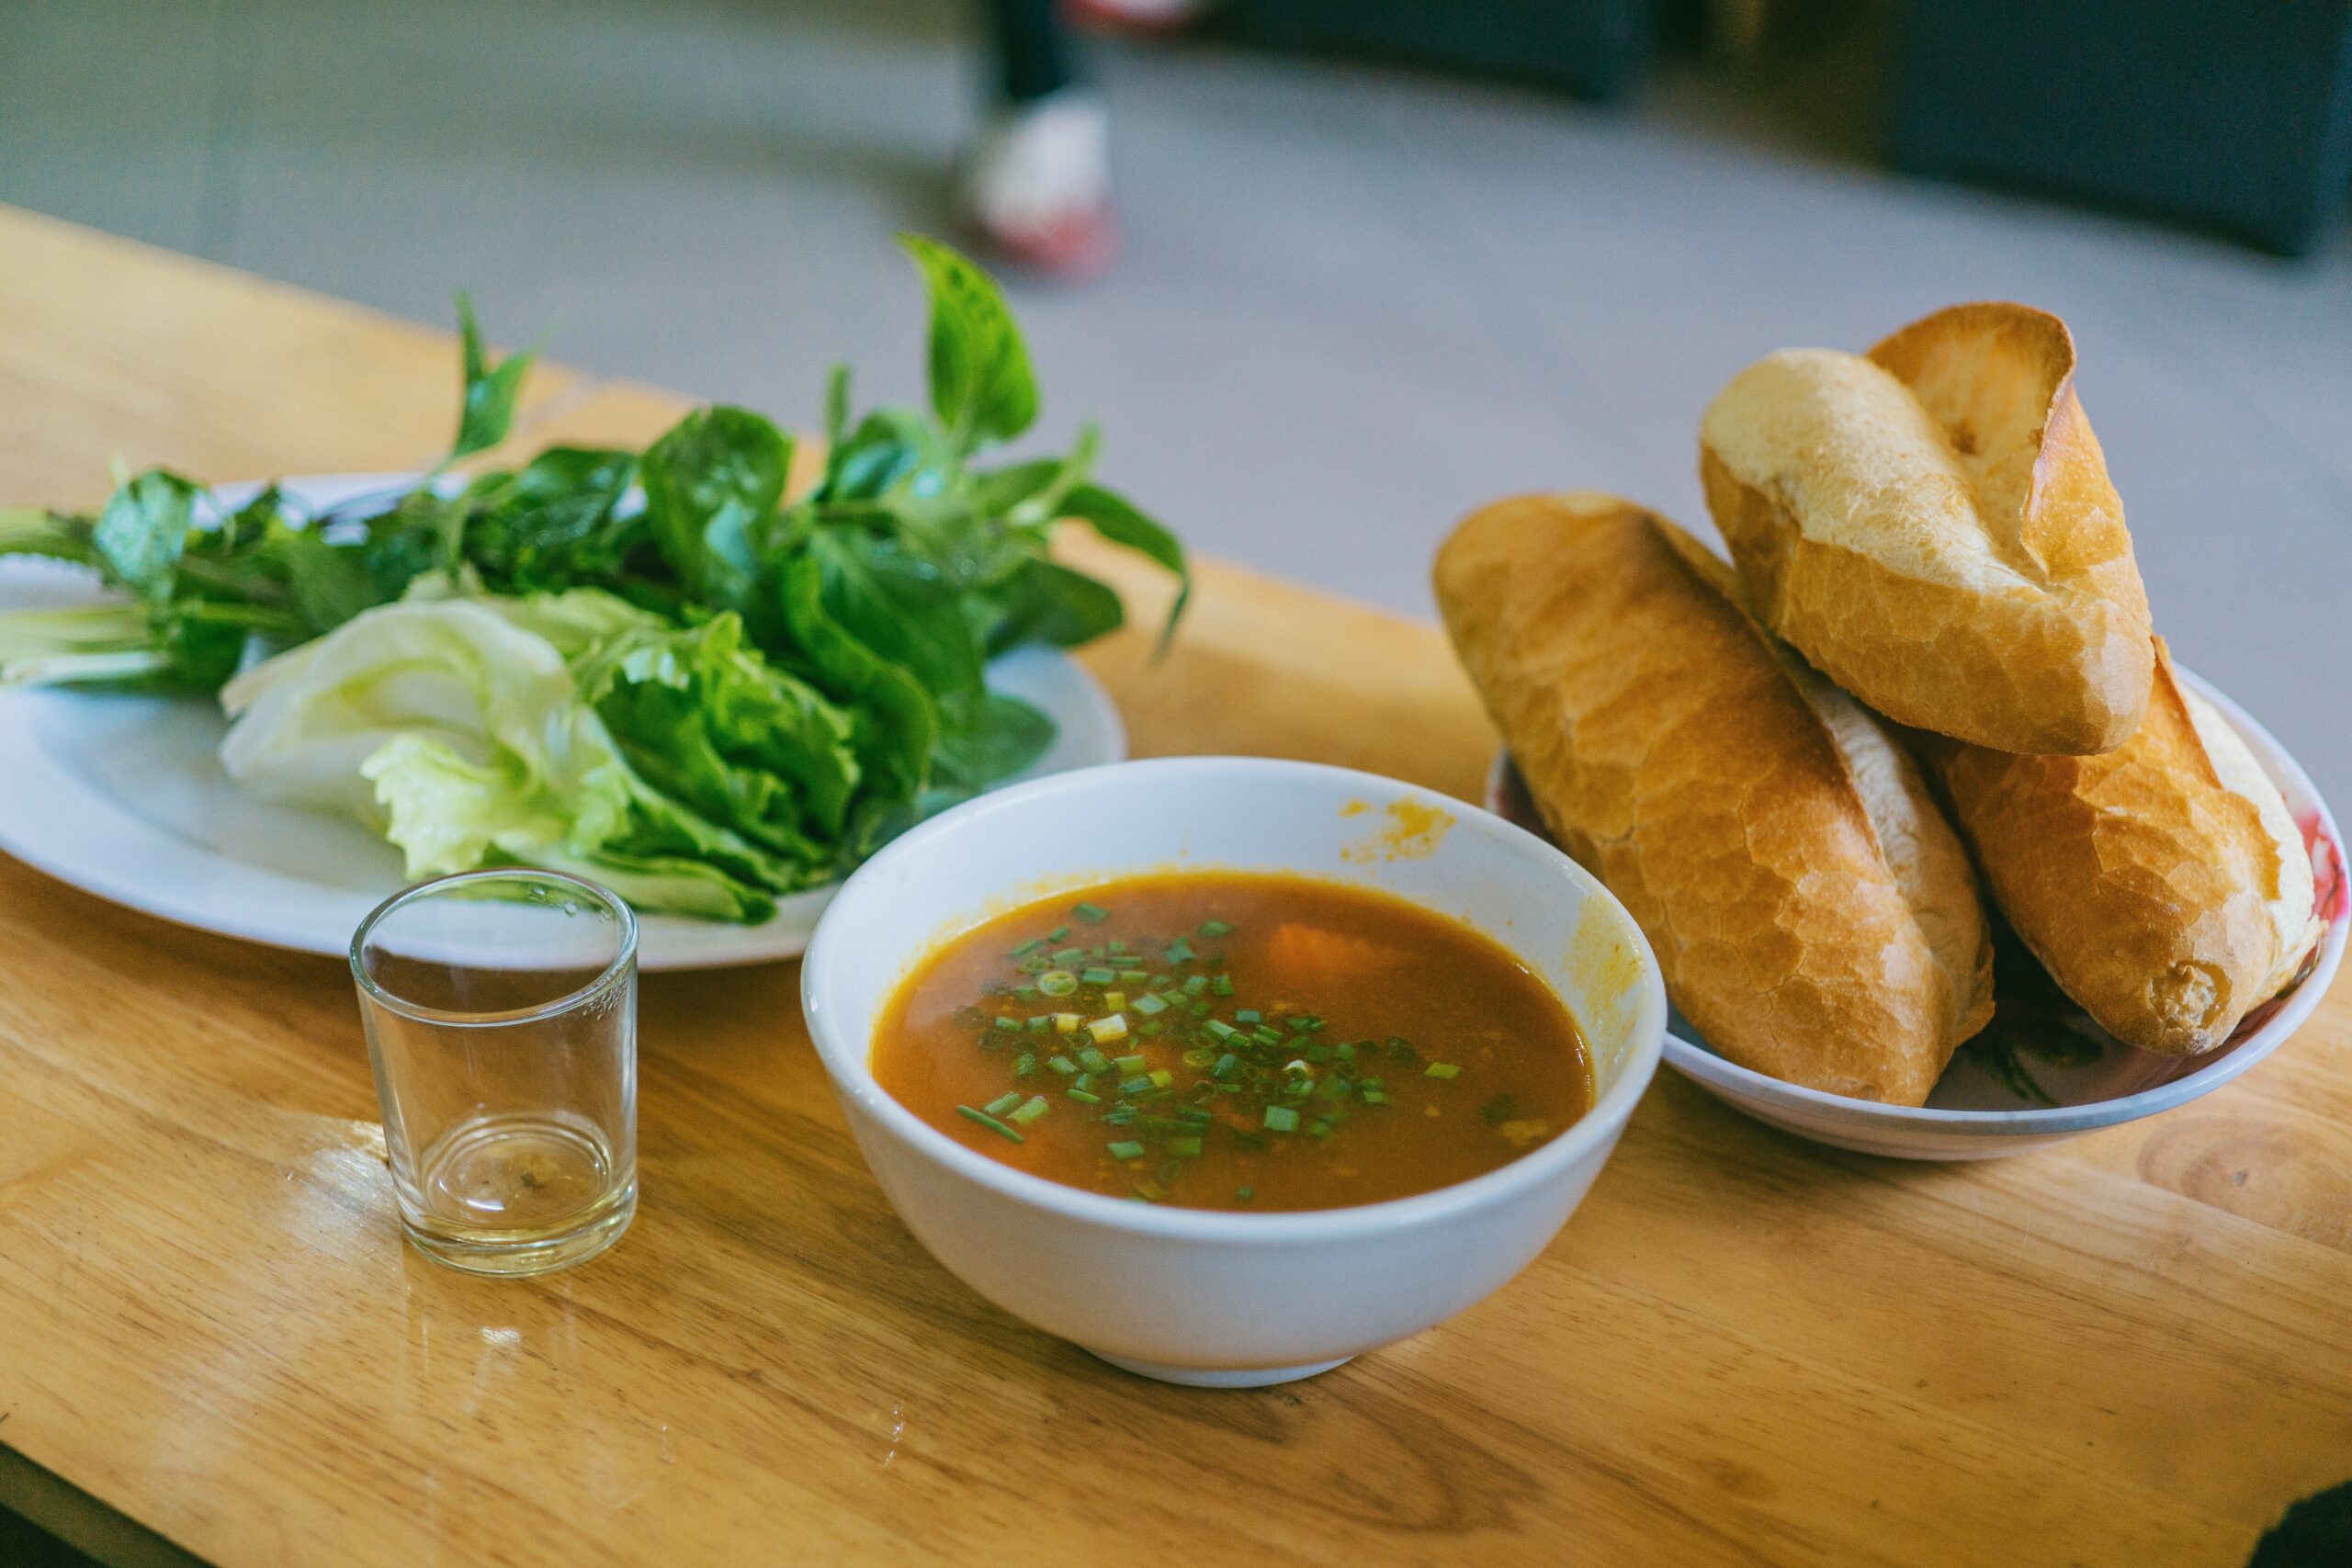 無酸素運動の効果をアップするために食事の内容に気を付けスープやサラダを取り入れる男性